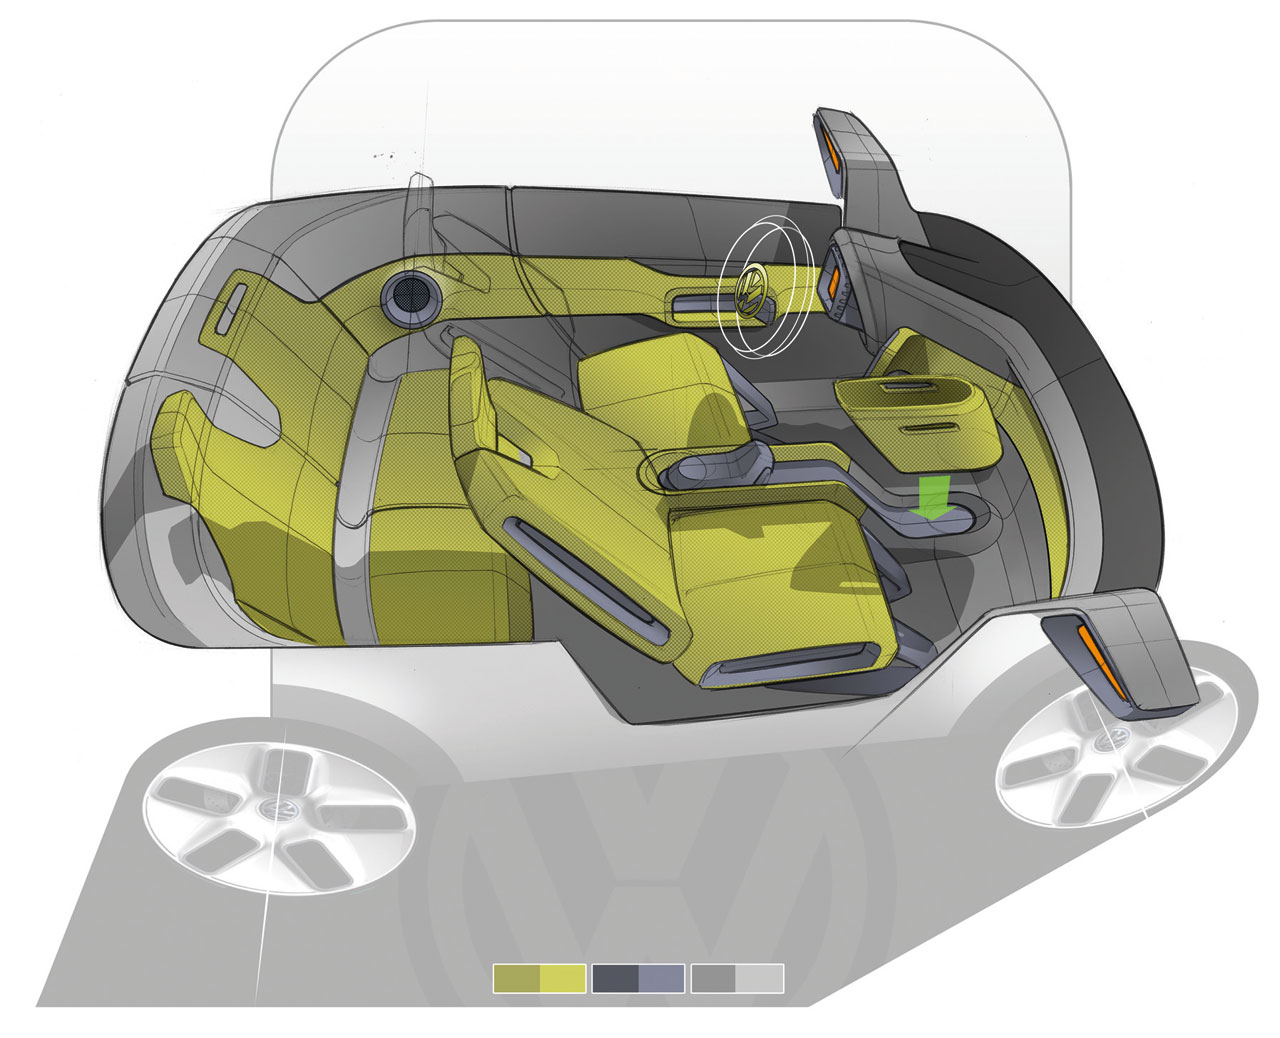 Volkswagen E-Up! Concept, 2009